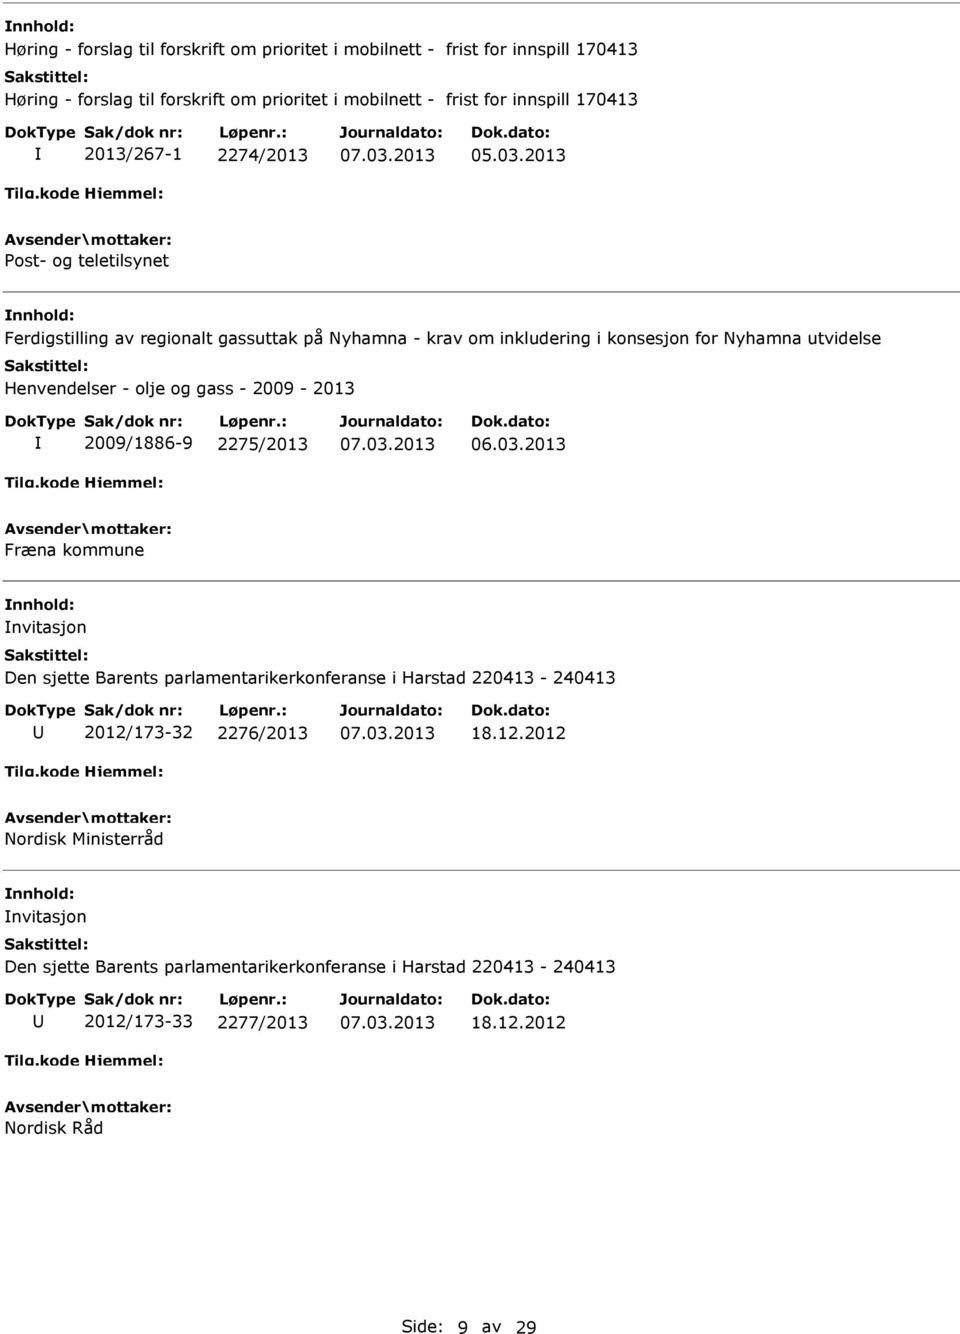 2013 Post- og teletilsynet Ferdigstilling av regionalt gassuttak på Nyhamna - krav om inkludering i konsesjon for Nyhamna